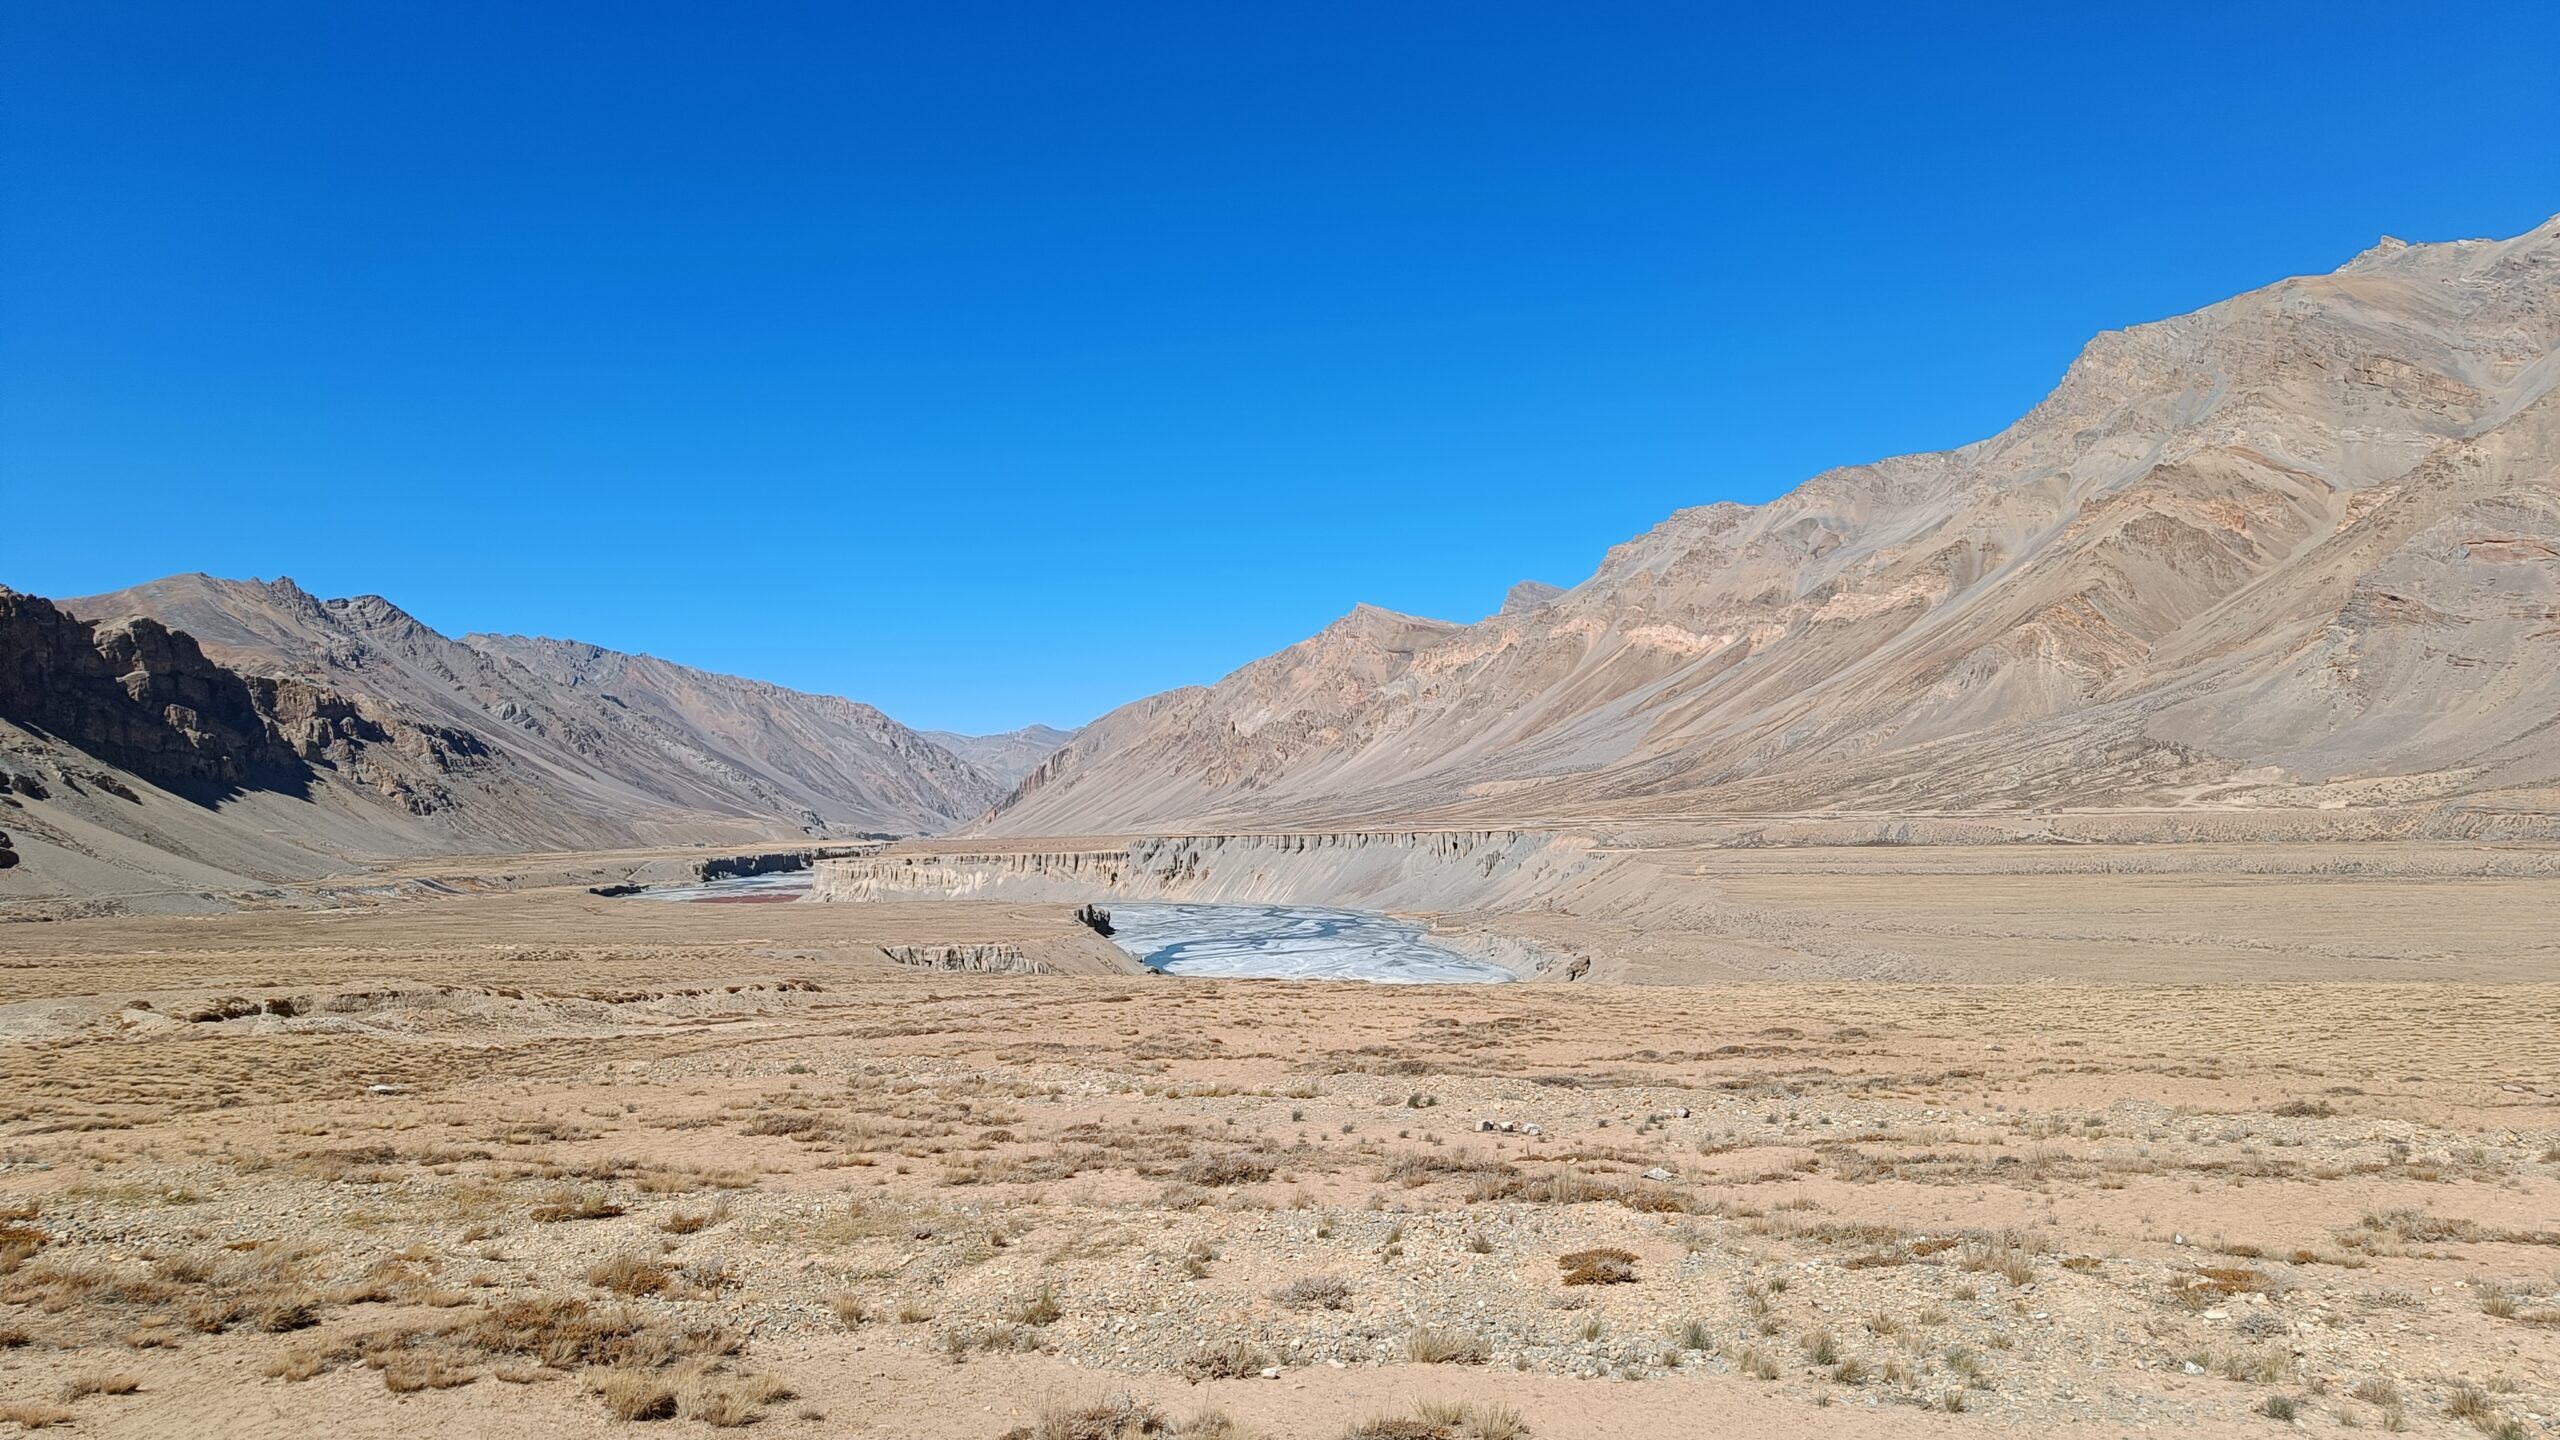 Frozen Indus in winter Ladakh scenery